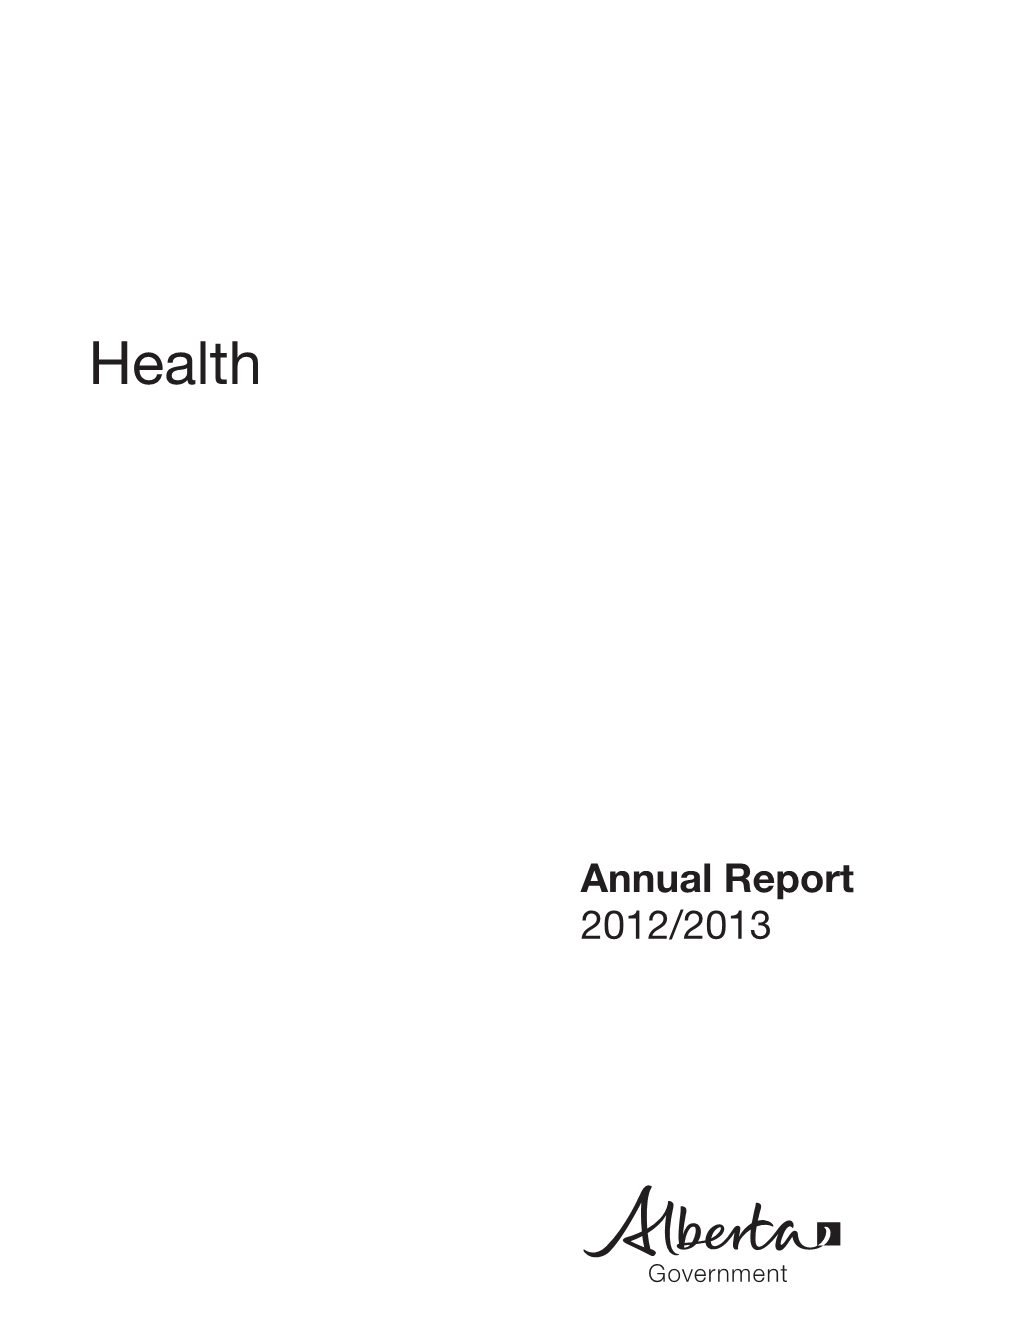 Alberta Health Annual Report 2012/13